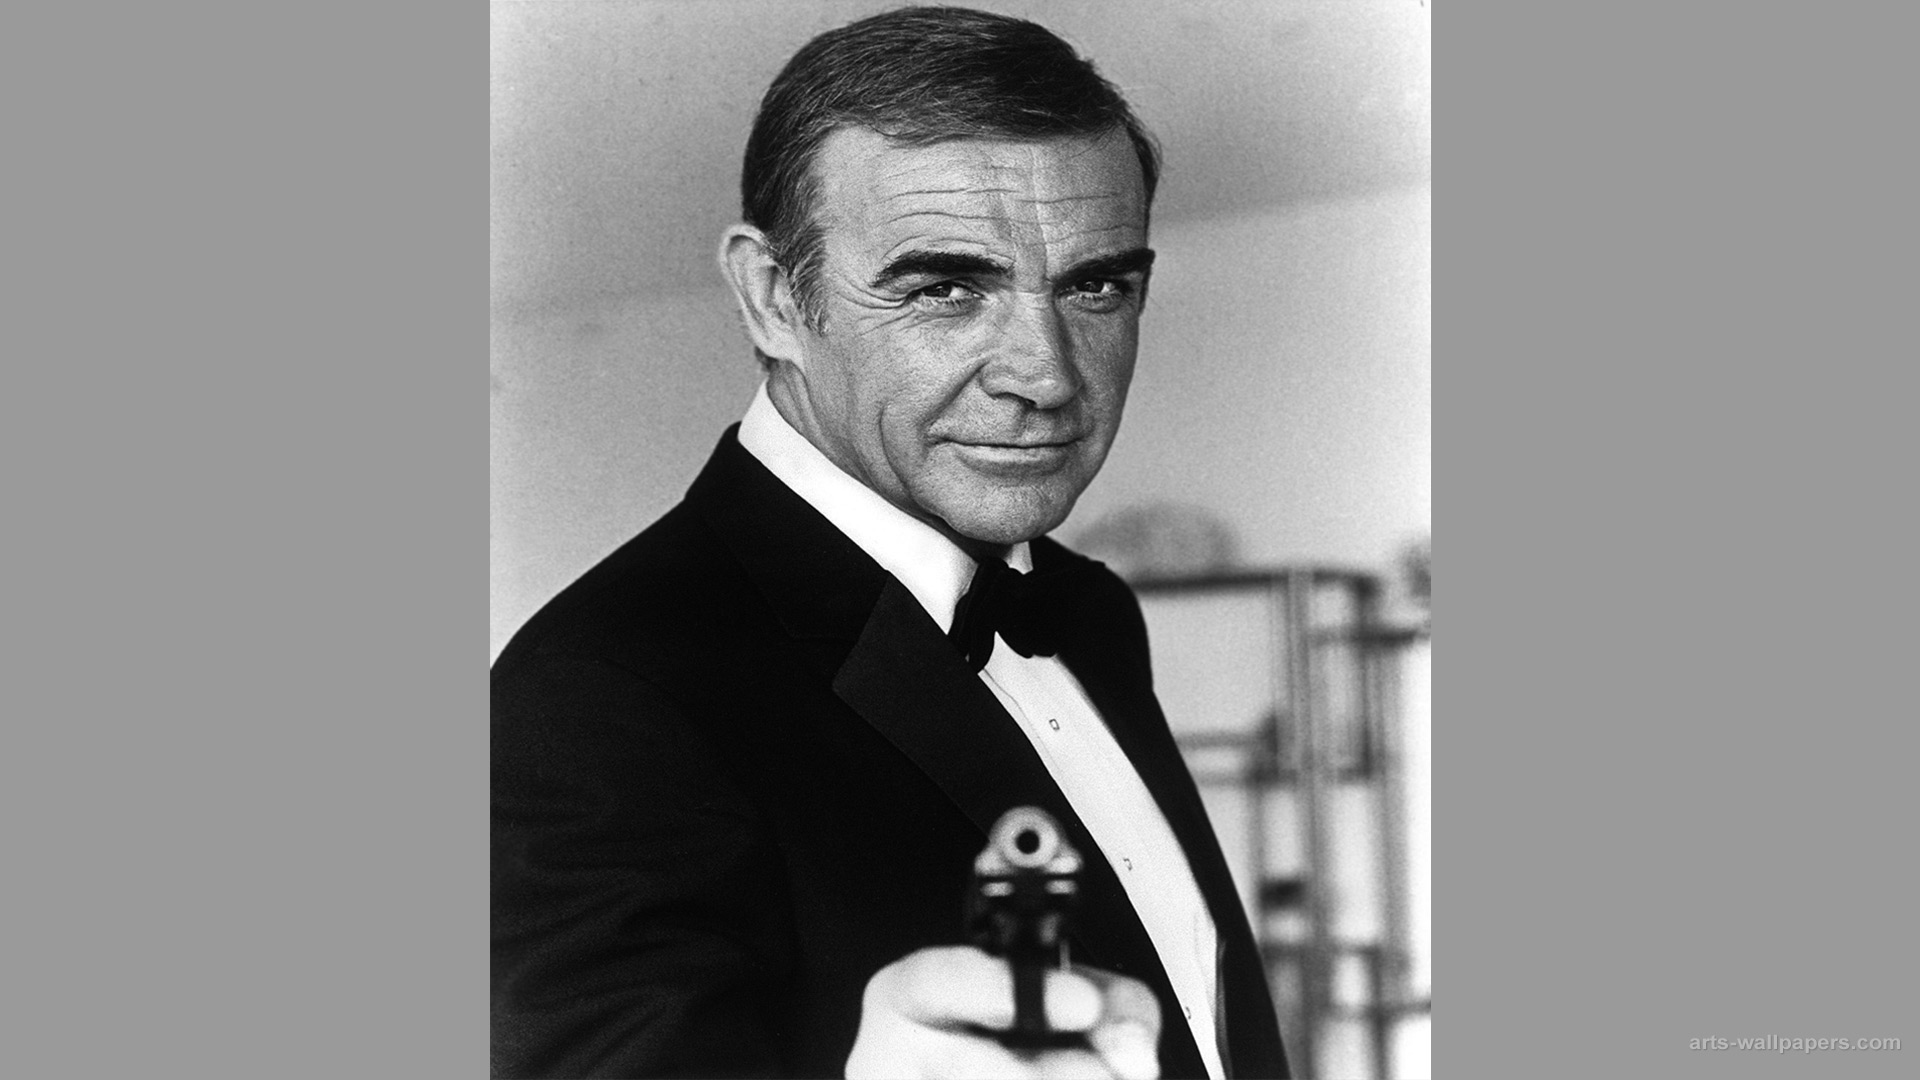 [49+] James Bond Wallpapers 1080p | WallpaperSafari